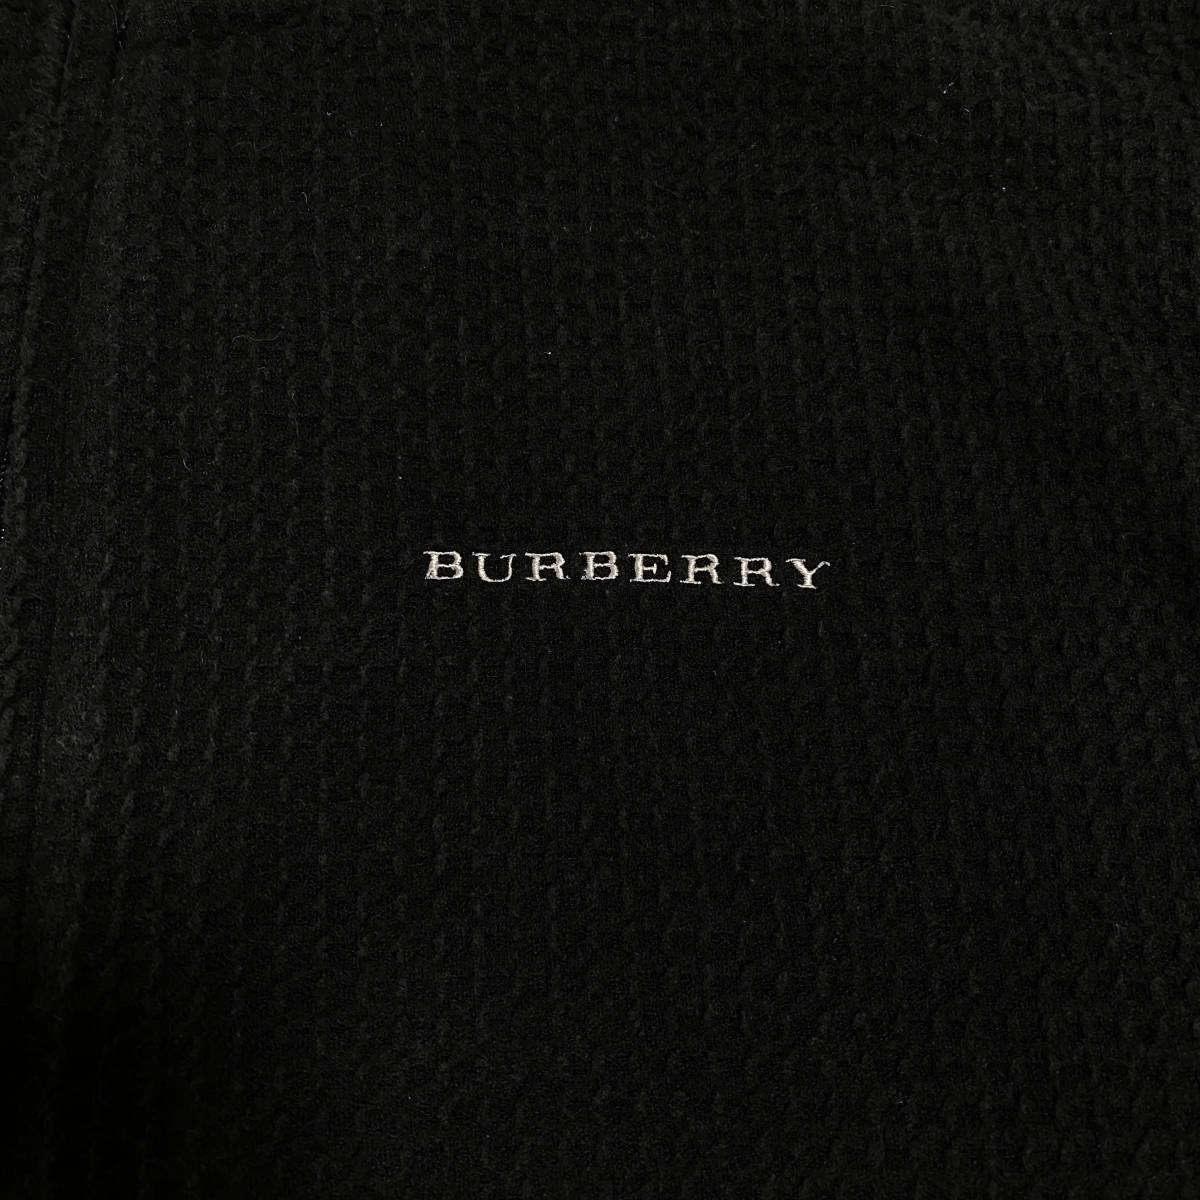  Burberry Golf половина Zip тянуть over тренировочный футболка BURBERRY GOLF сделано в Японии вафля материалы Town Youth ..205